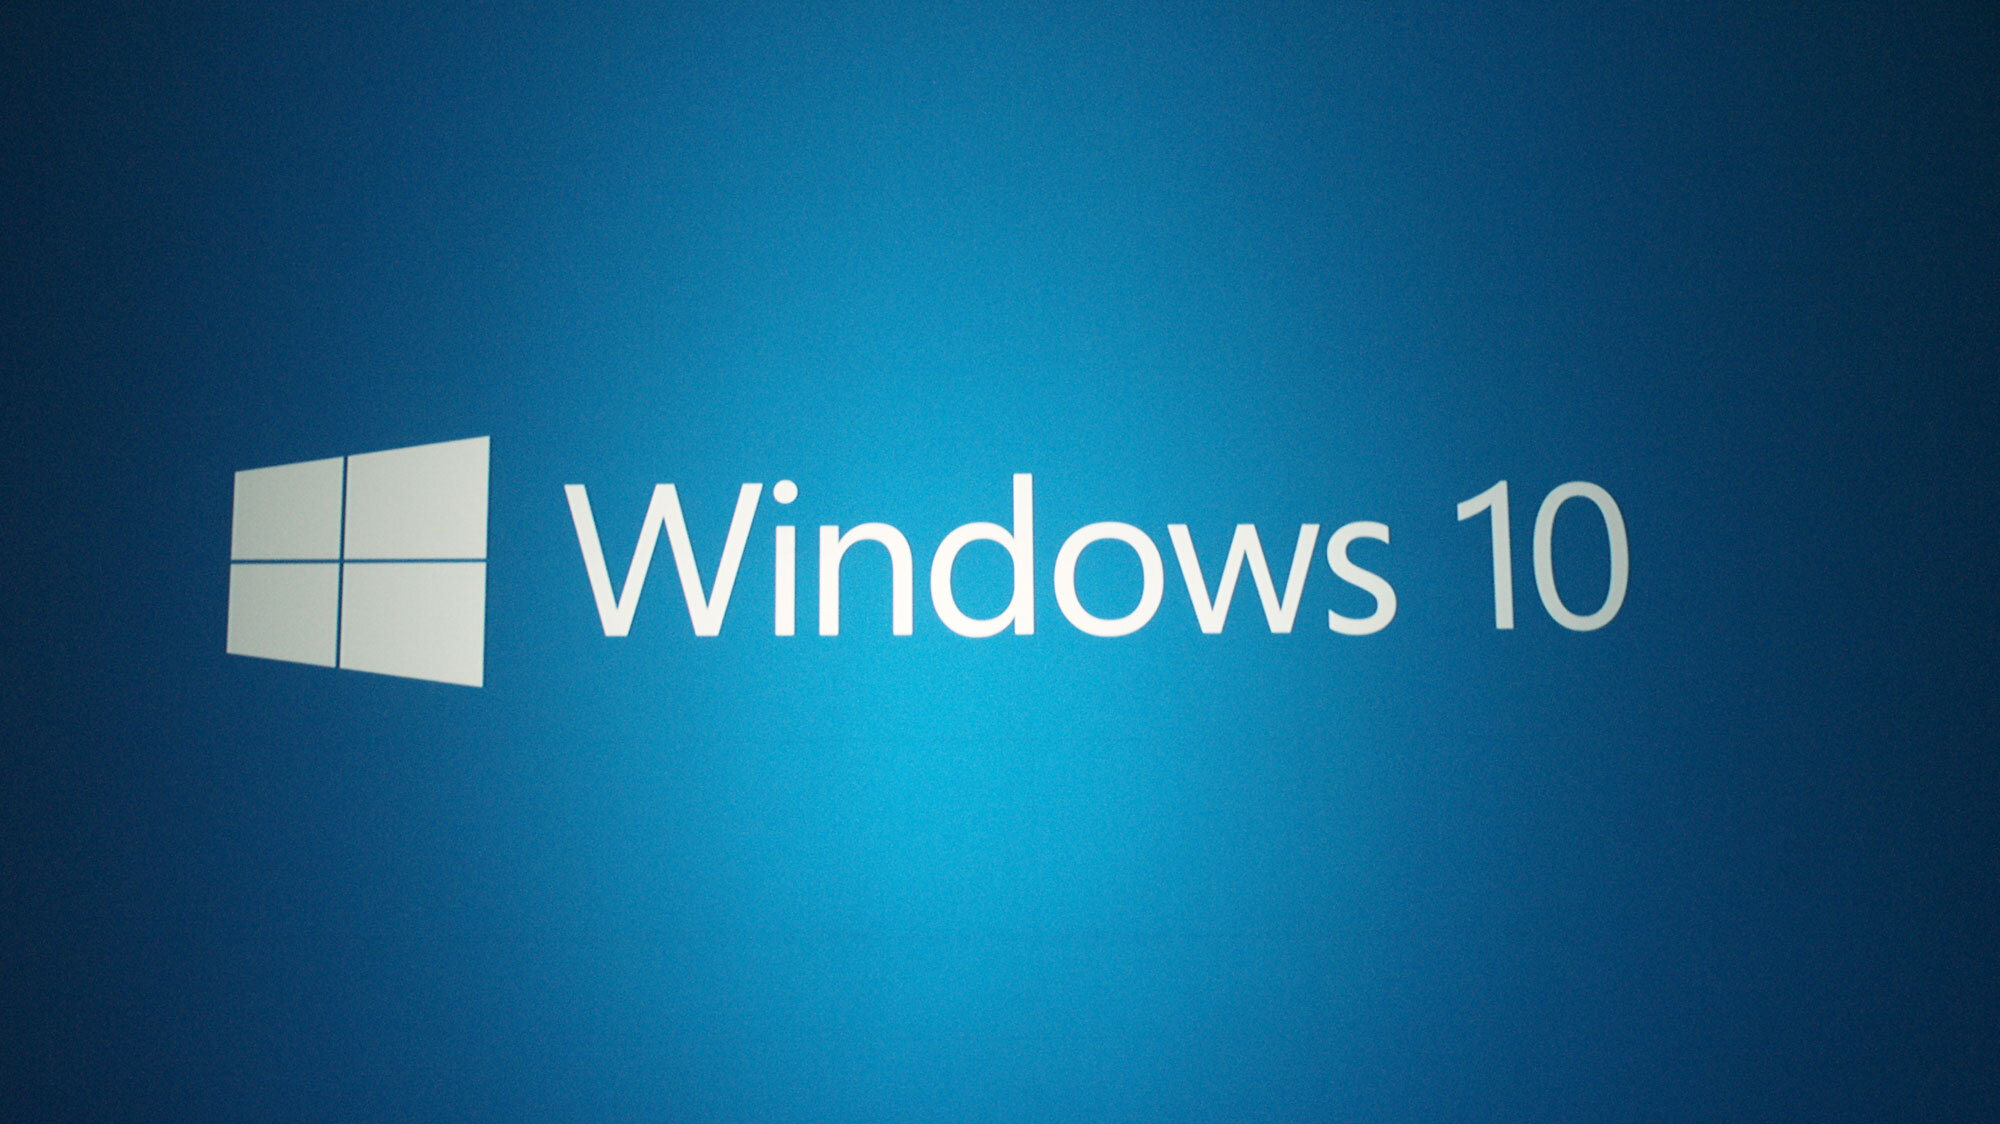 Noutati din industria de hosting – Microsoft va dezvalui Windows 10